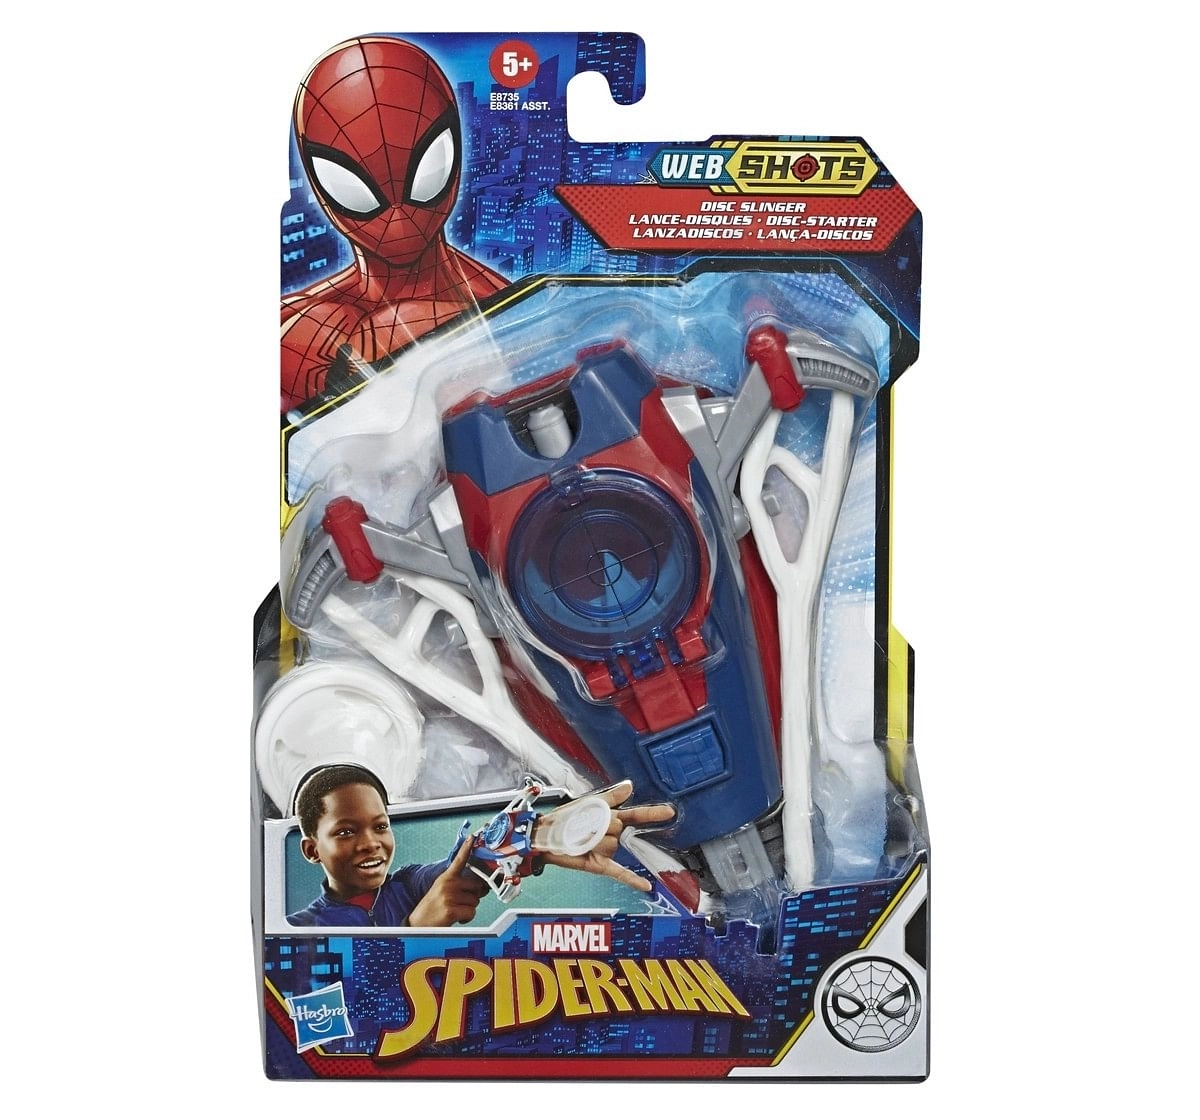 Marvel SpiderMan Web Shots Gear Blaster Toy Multicolor 5Y+